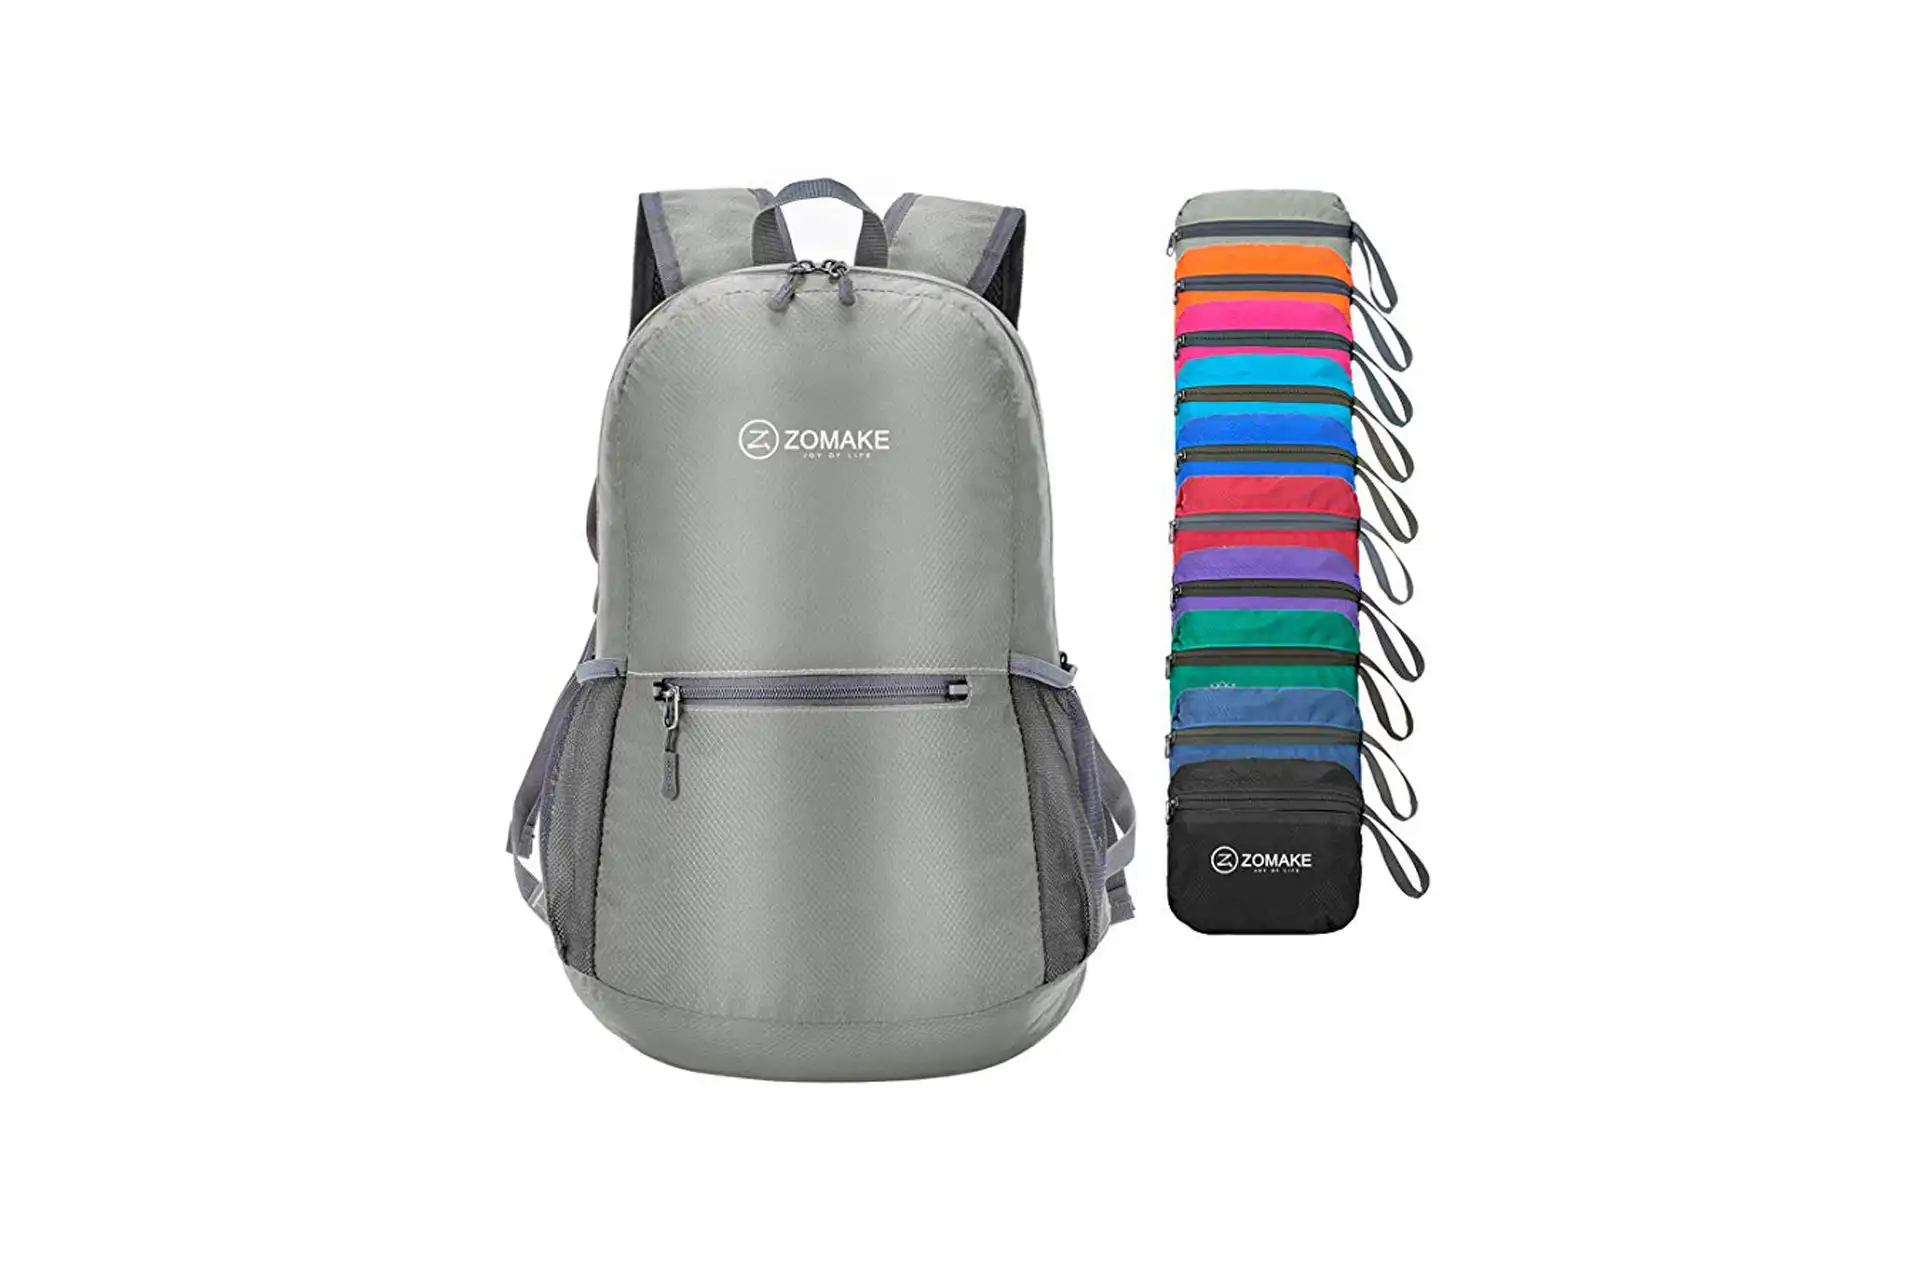 Zomake Backpack; Courtesy of Amazon